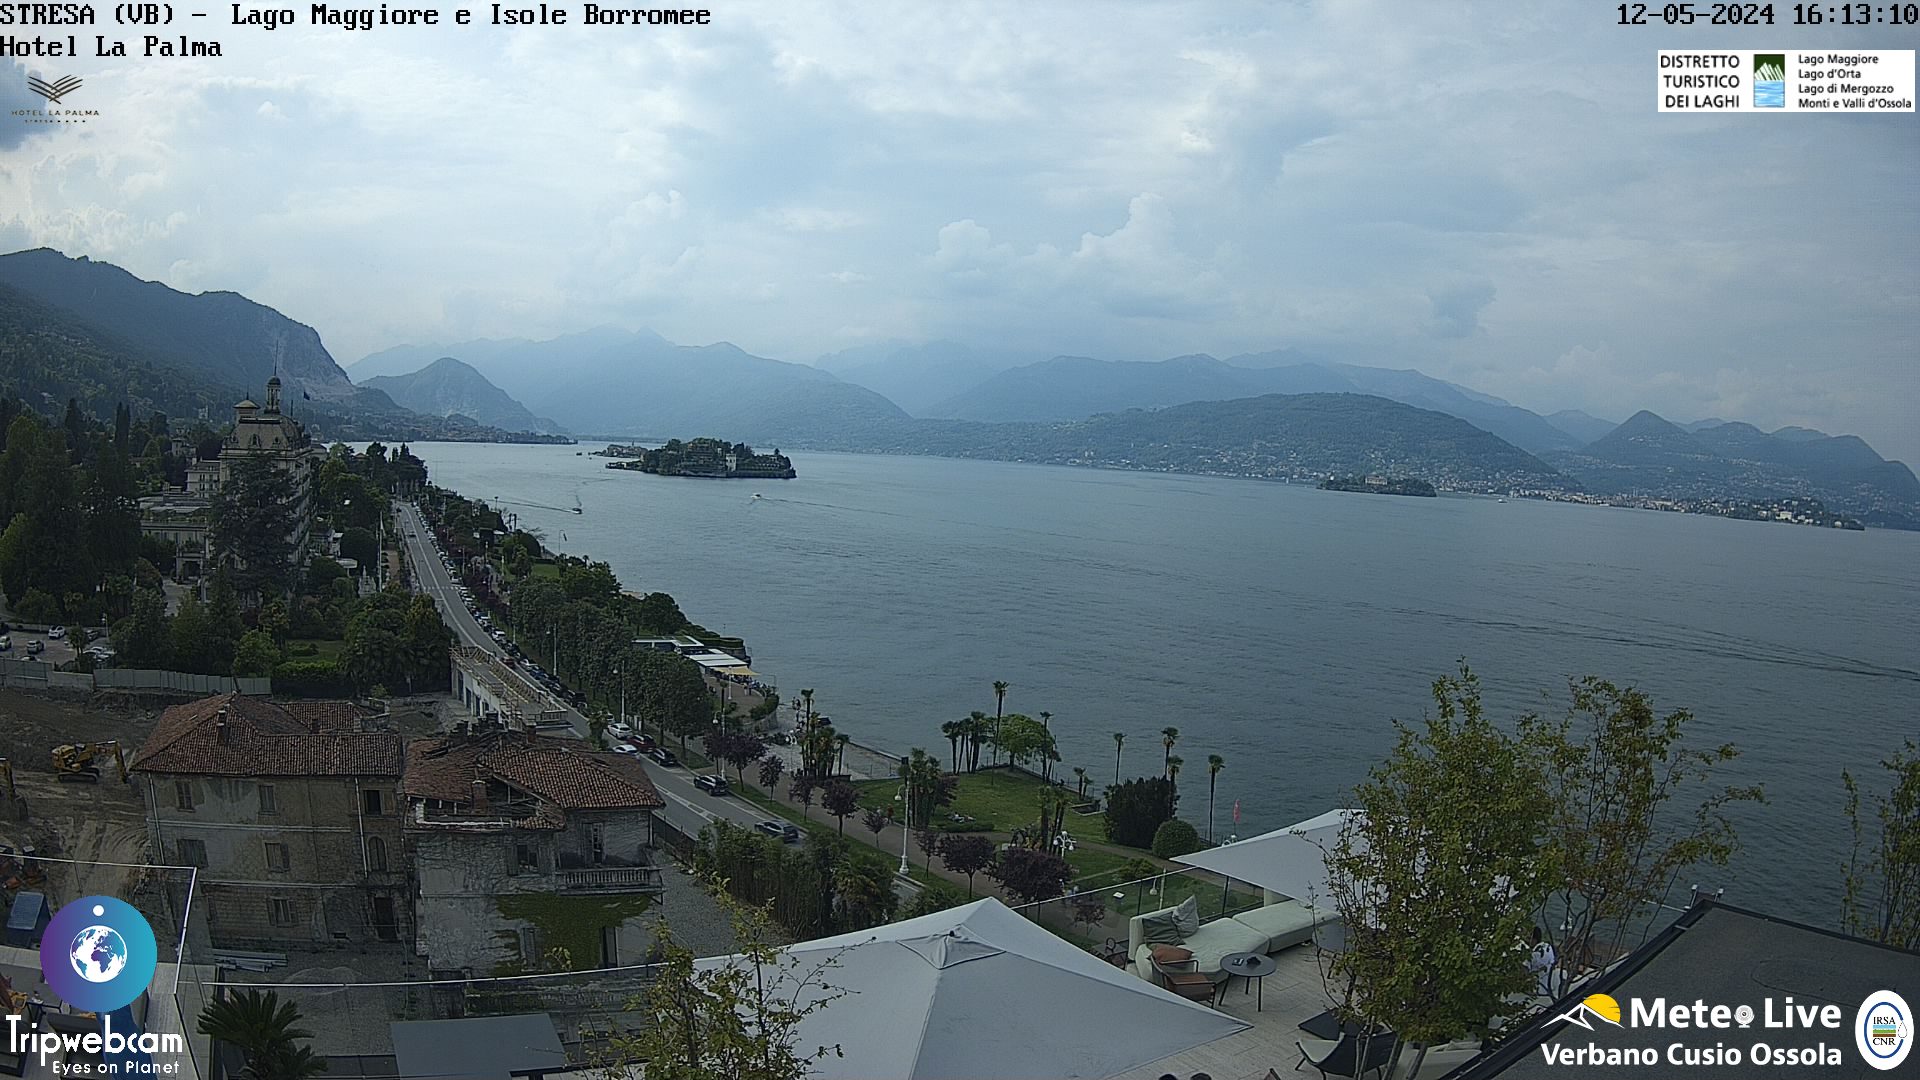 Stresa (Lago Maggiore) Ven. 17:18